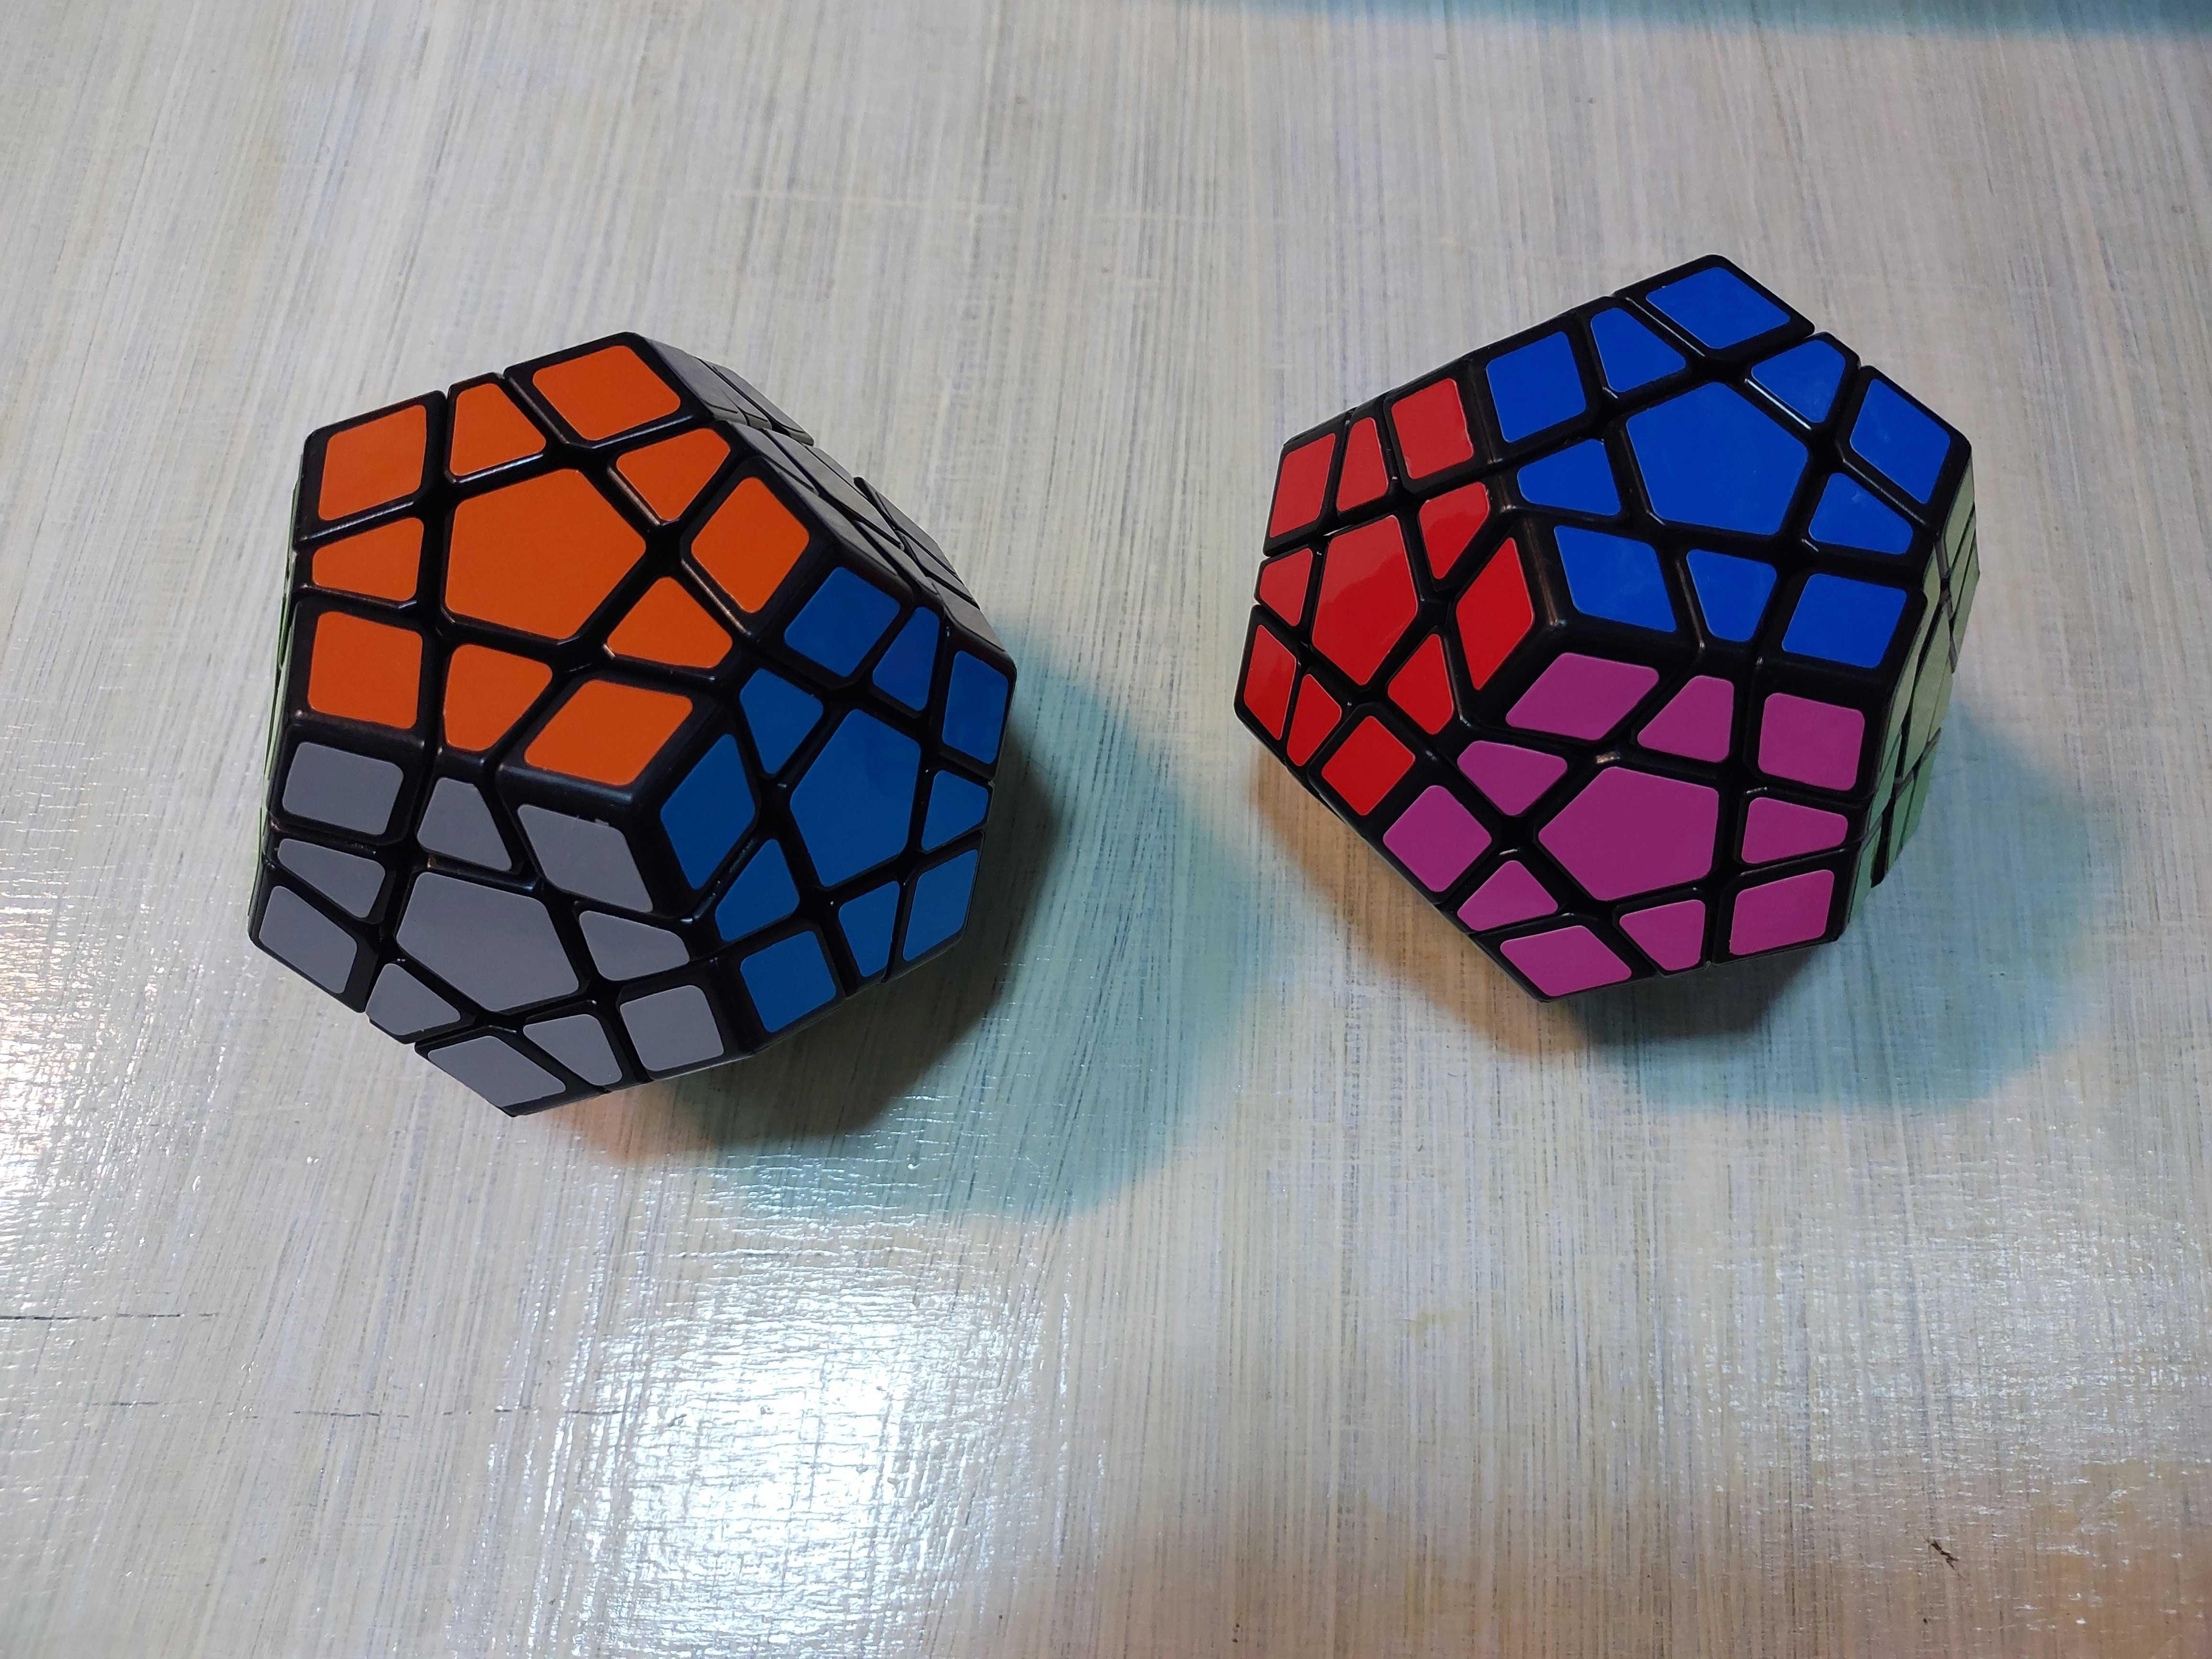 Cub rubic Rubikub